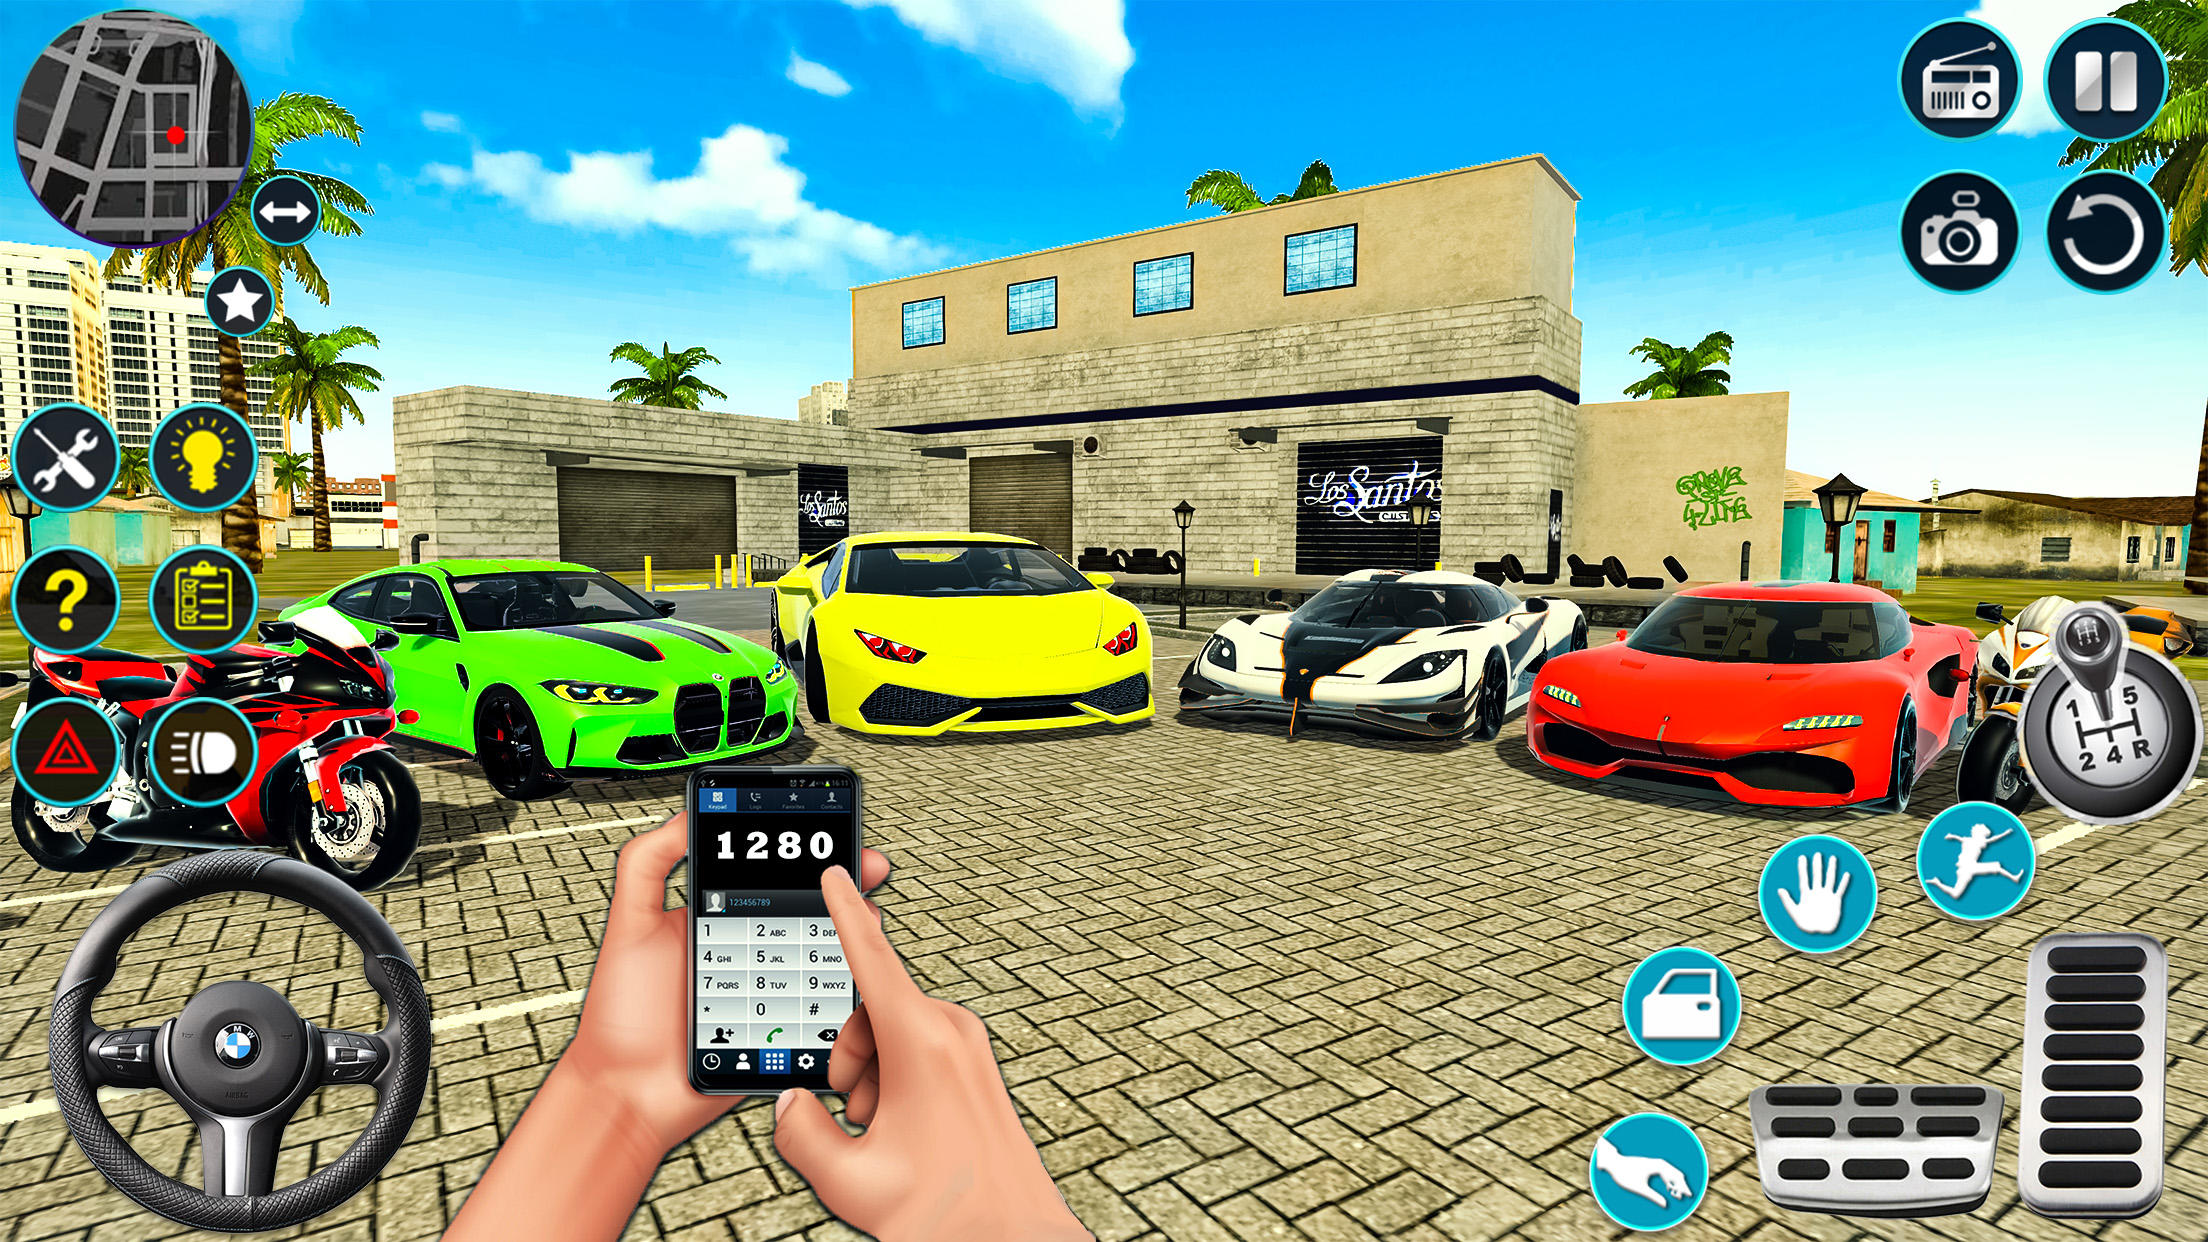 Screenshot 1 of Open world Car Driving 3D Sim 1.1